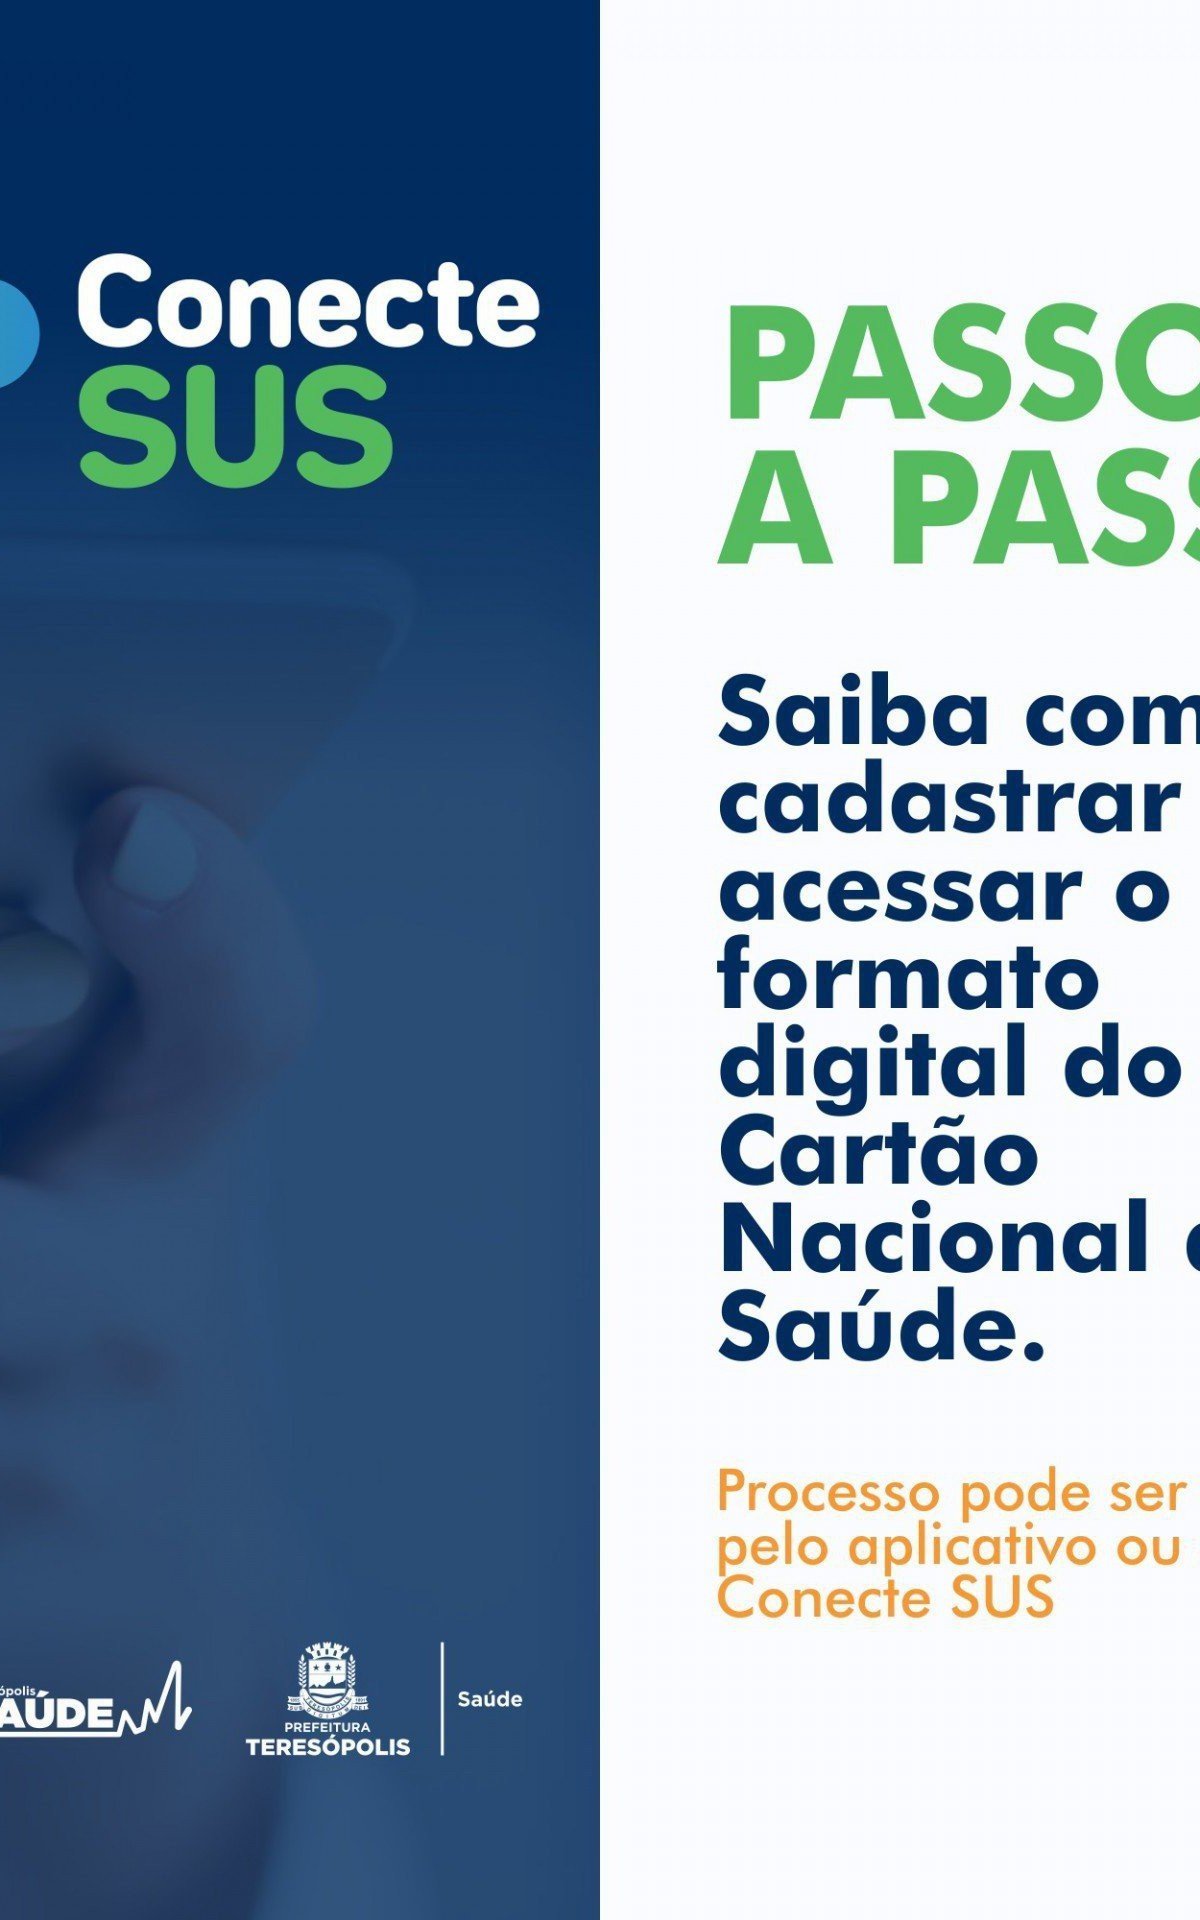 Cadastro do formato digital do Cartão Nacional de Saúde - Divulgação